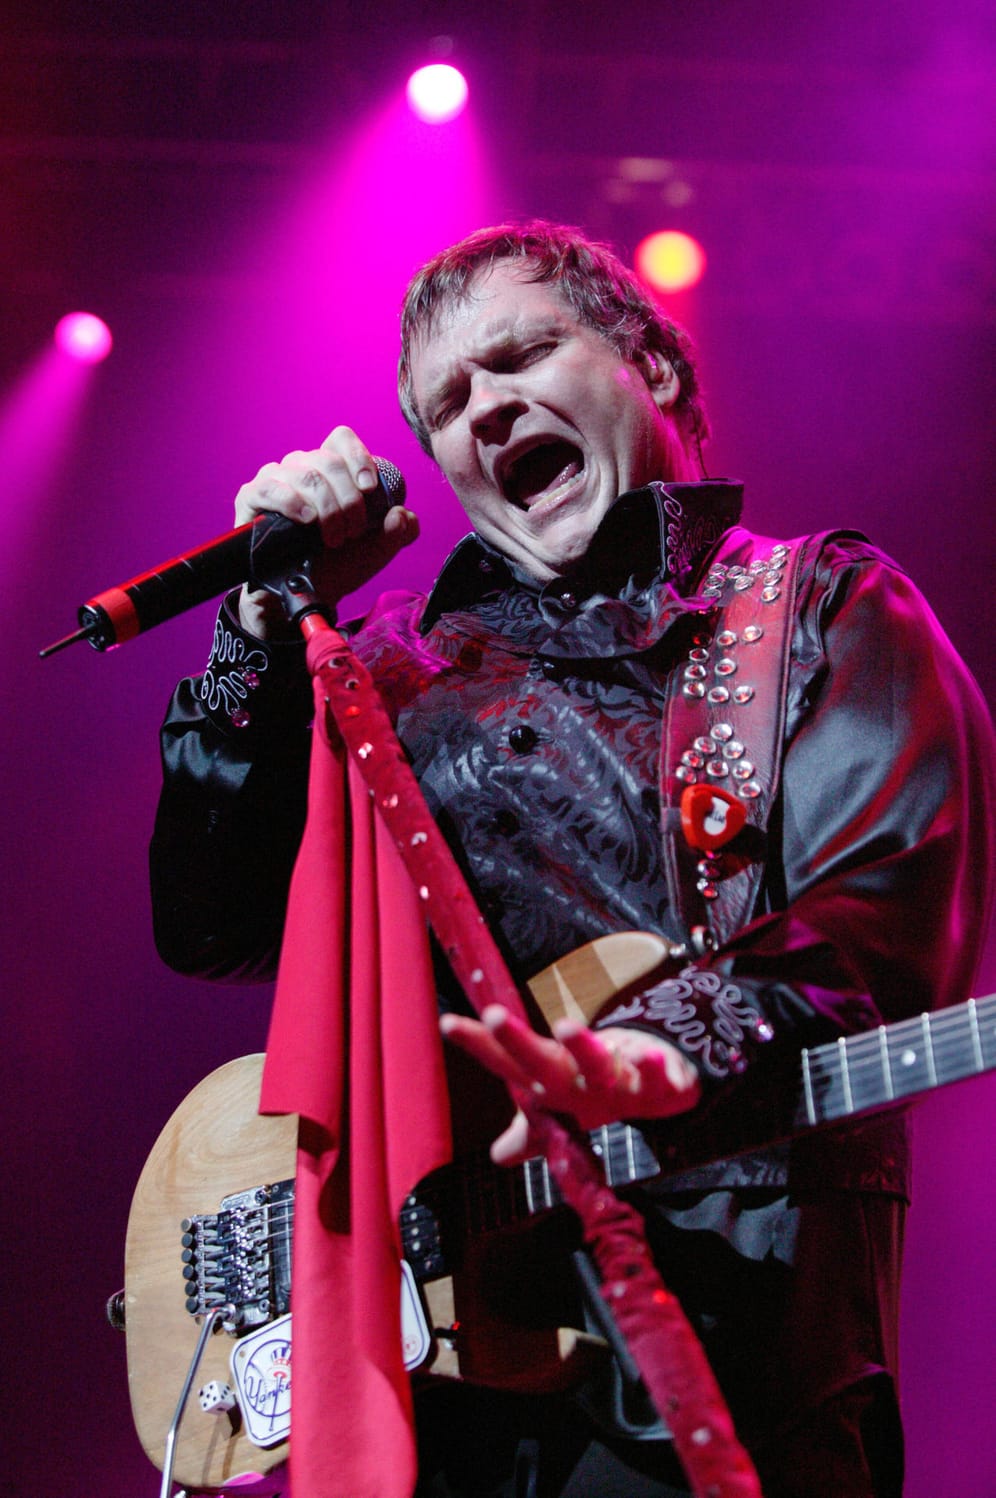 2003 brach der Sänger während eines Konzerts in der Wembley Arena zusammen. Vier Tage später unterzog er sich einer Herzoperation.